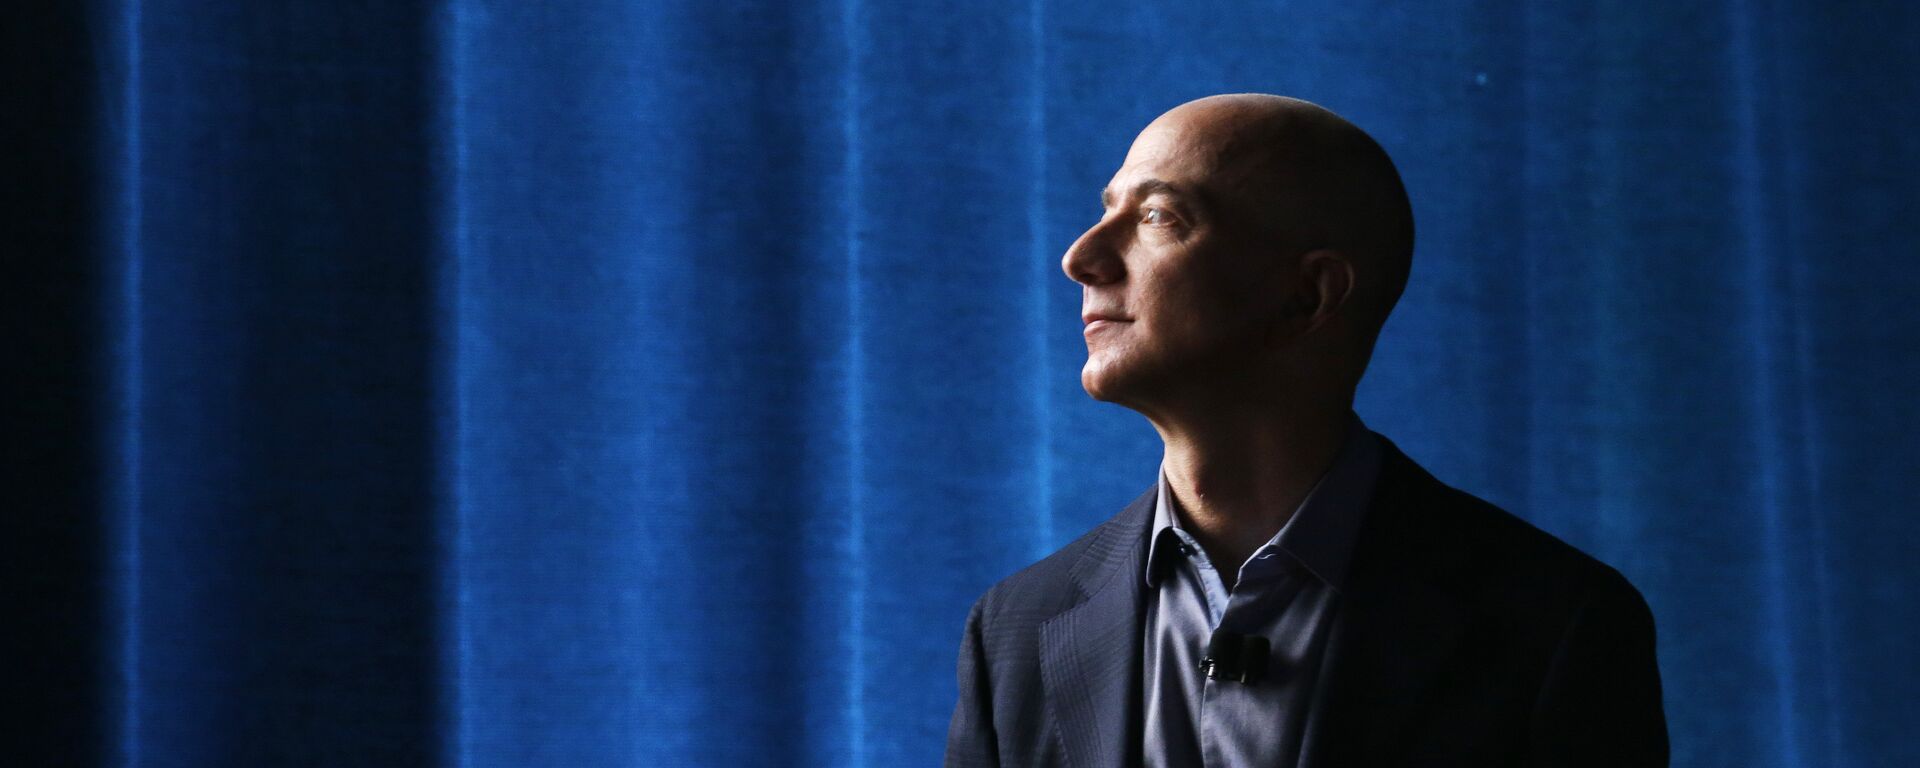 Jeff Bezos, propietario de Amazon  - Sputnik Mundo, 1920, 21.07.2021